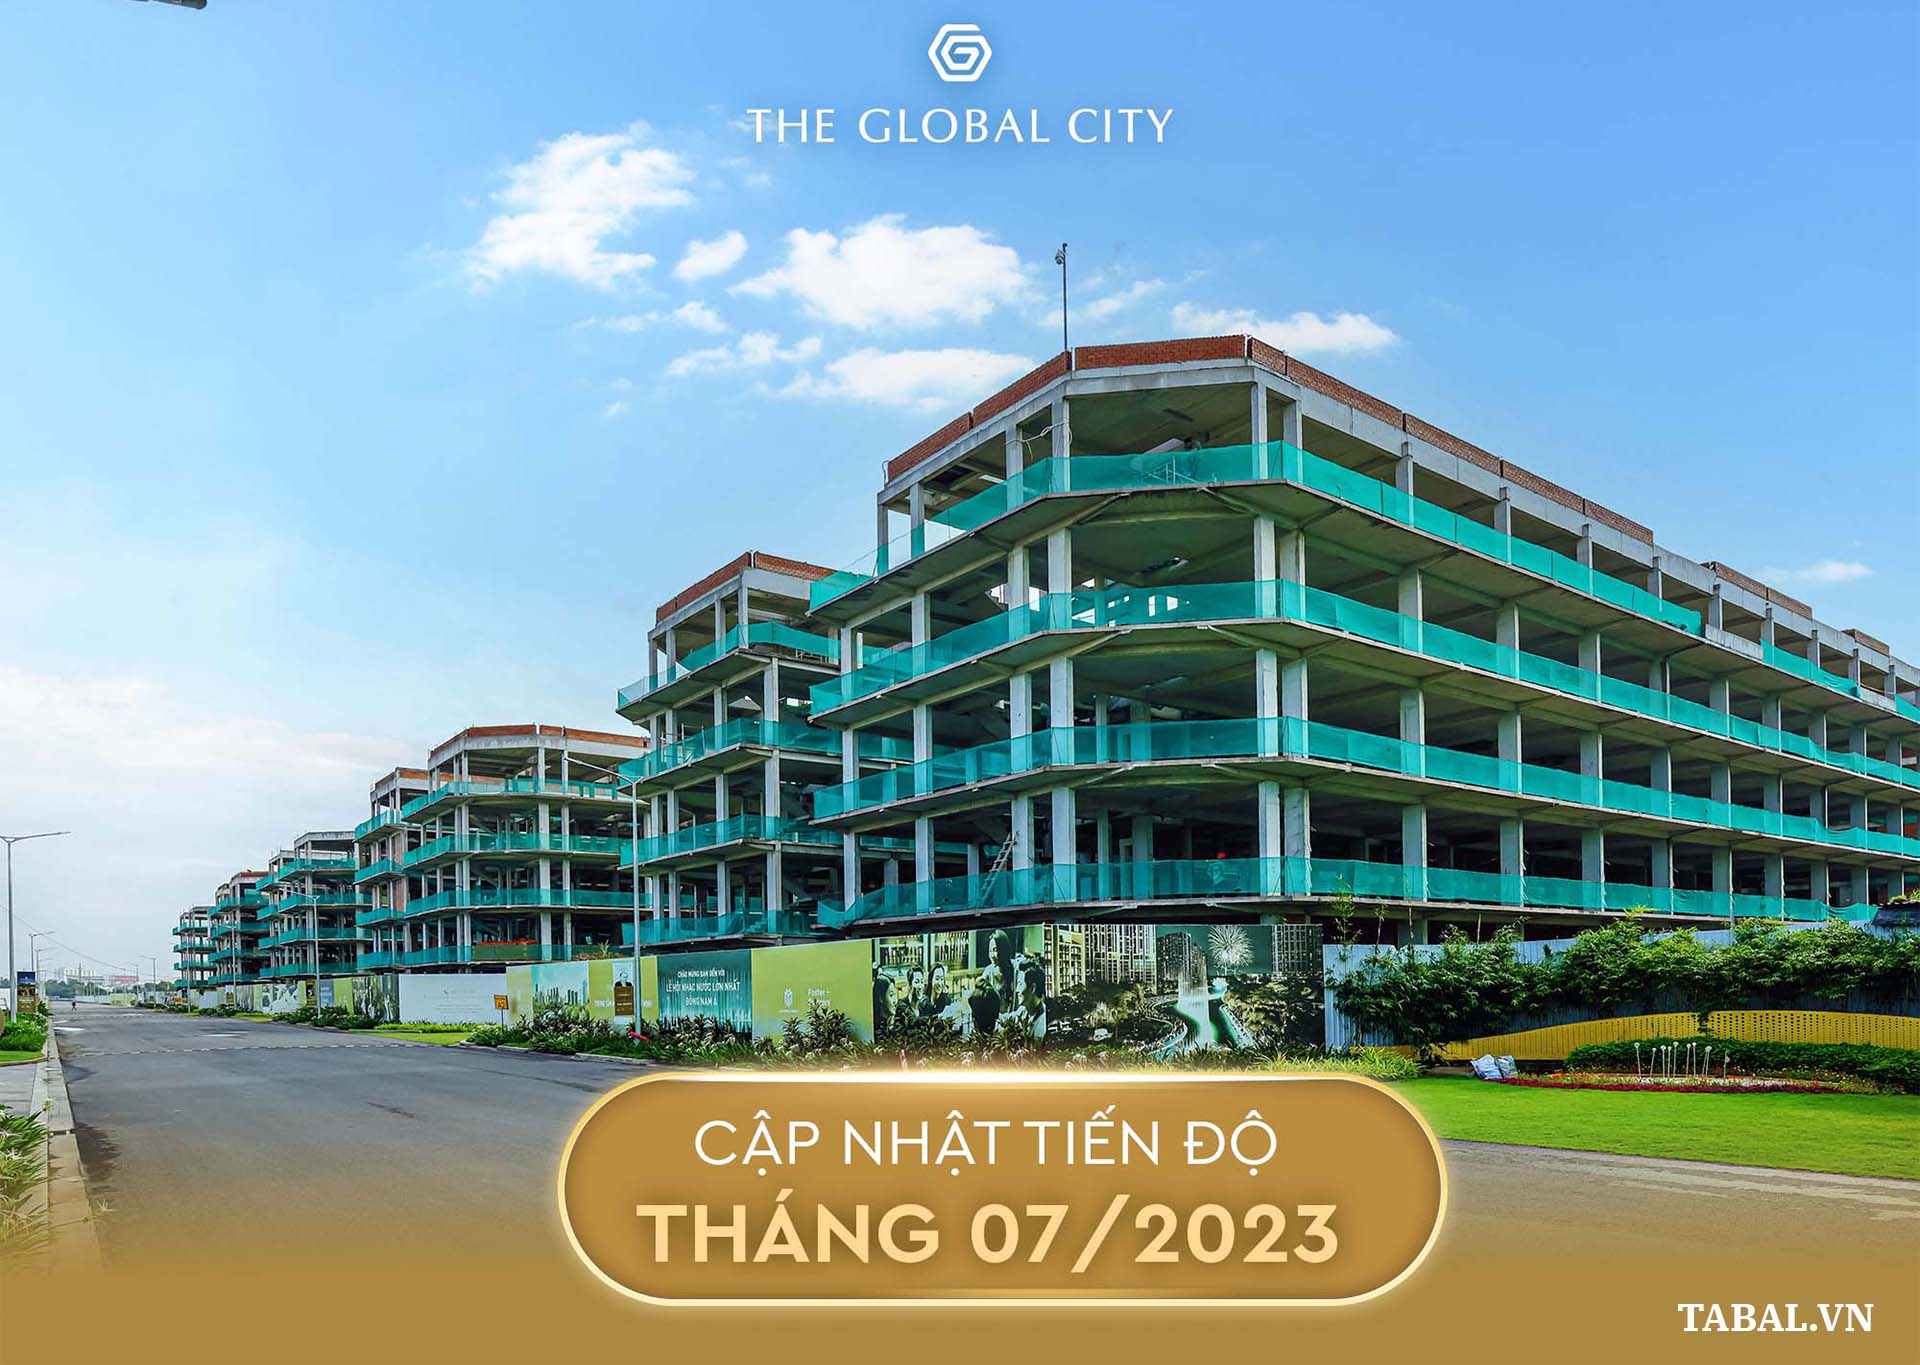 Thực tế nhà phố SOHO khu đô thị The Global City tháng 7/2023